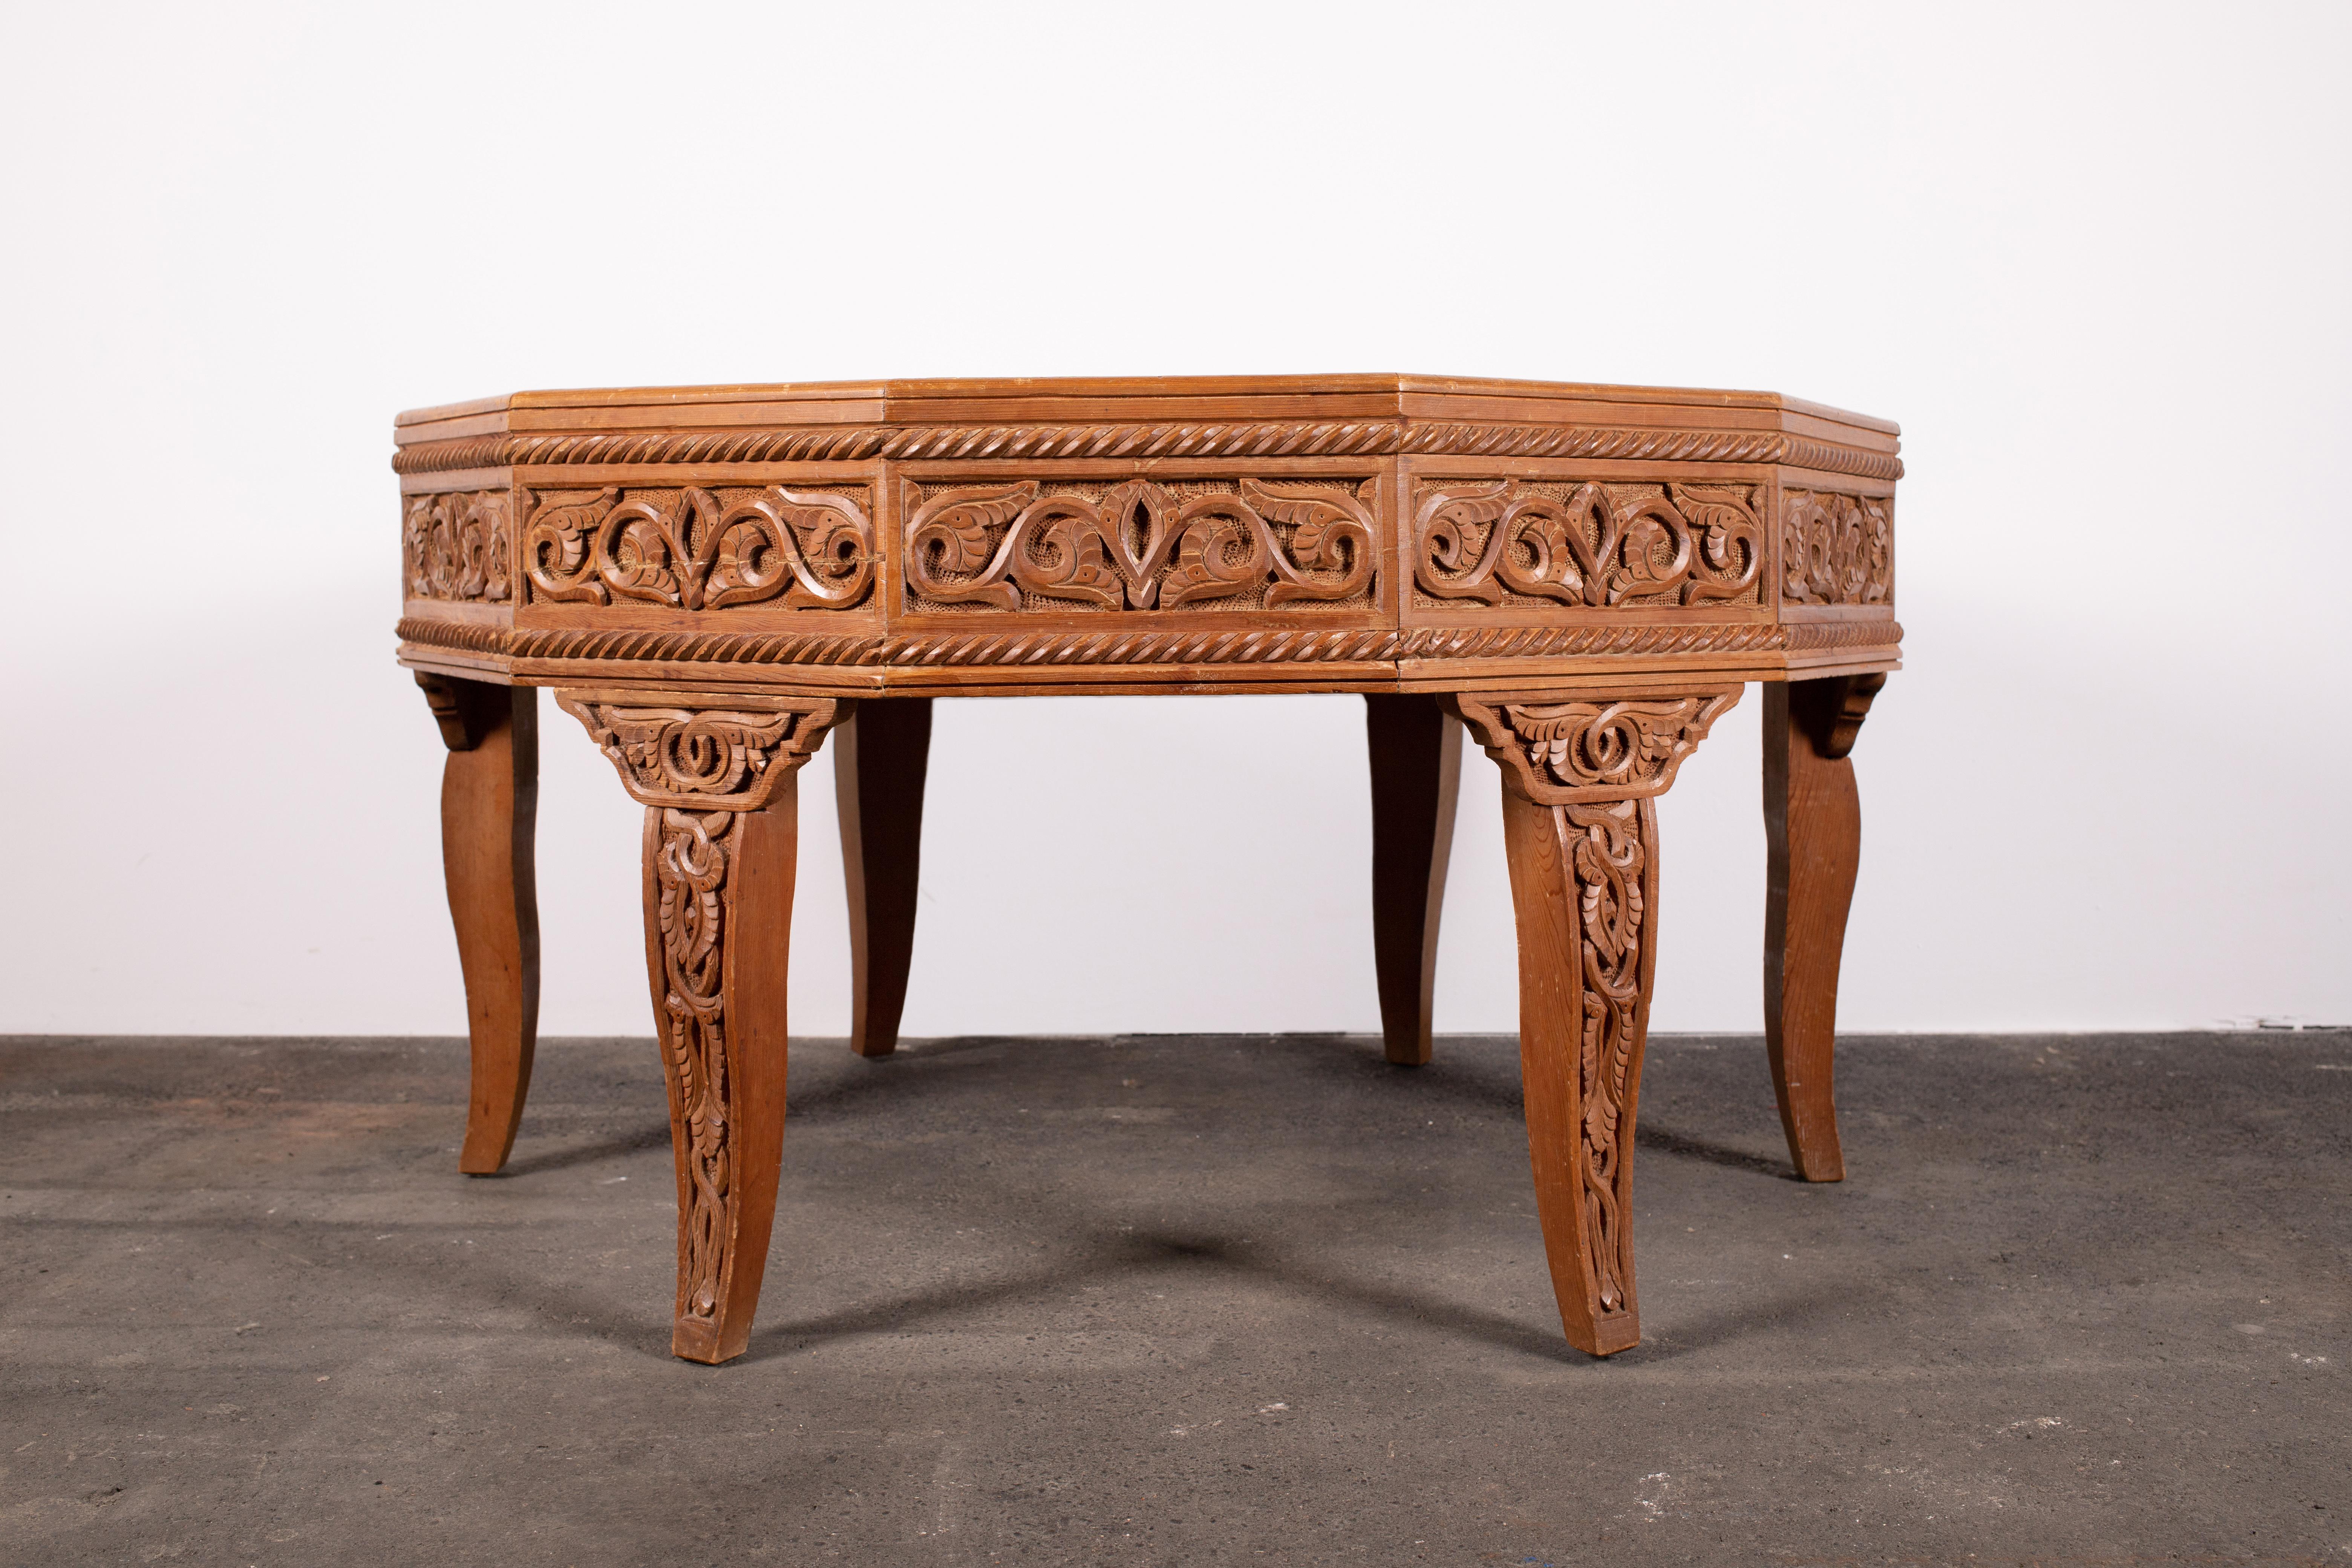 Un savoir-faire exceptionnel et un bois d'une beauté unique, tous deux d'une époque révolue. Cette table centrale ou table basse à 12 côtés est construite en cèdre de l'Atlas. Un bois unique dans les poches des montagnes de l'Atlas marocain. Un bois